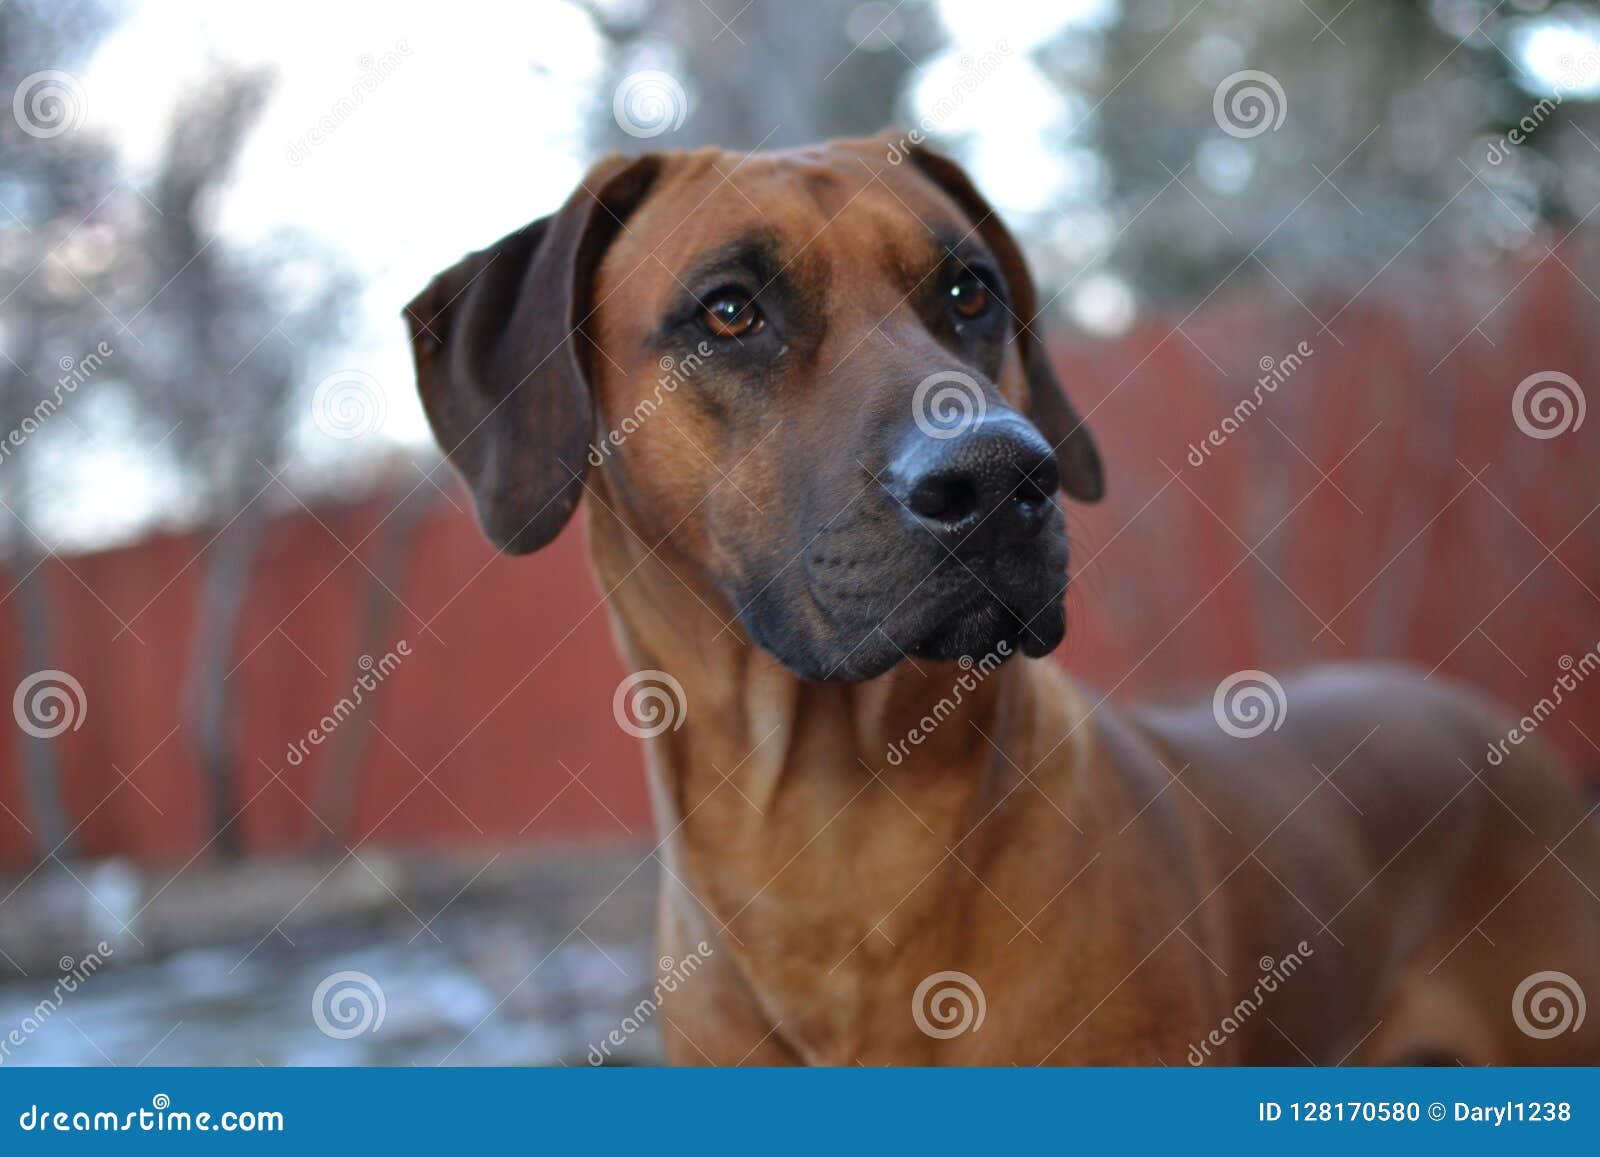 Brown Rhodesian Ridgeback Puppy Dog Stock Photo Image Of Ridgeback Proud 128170580